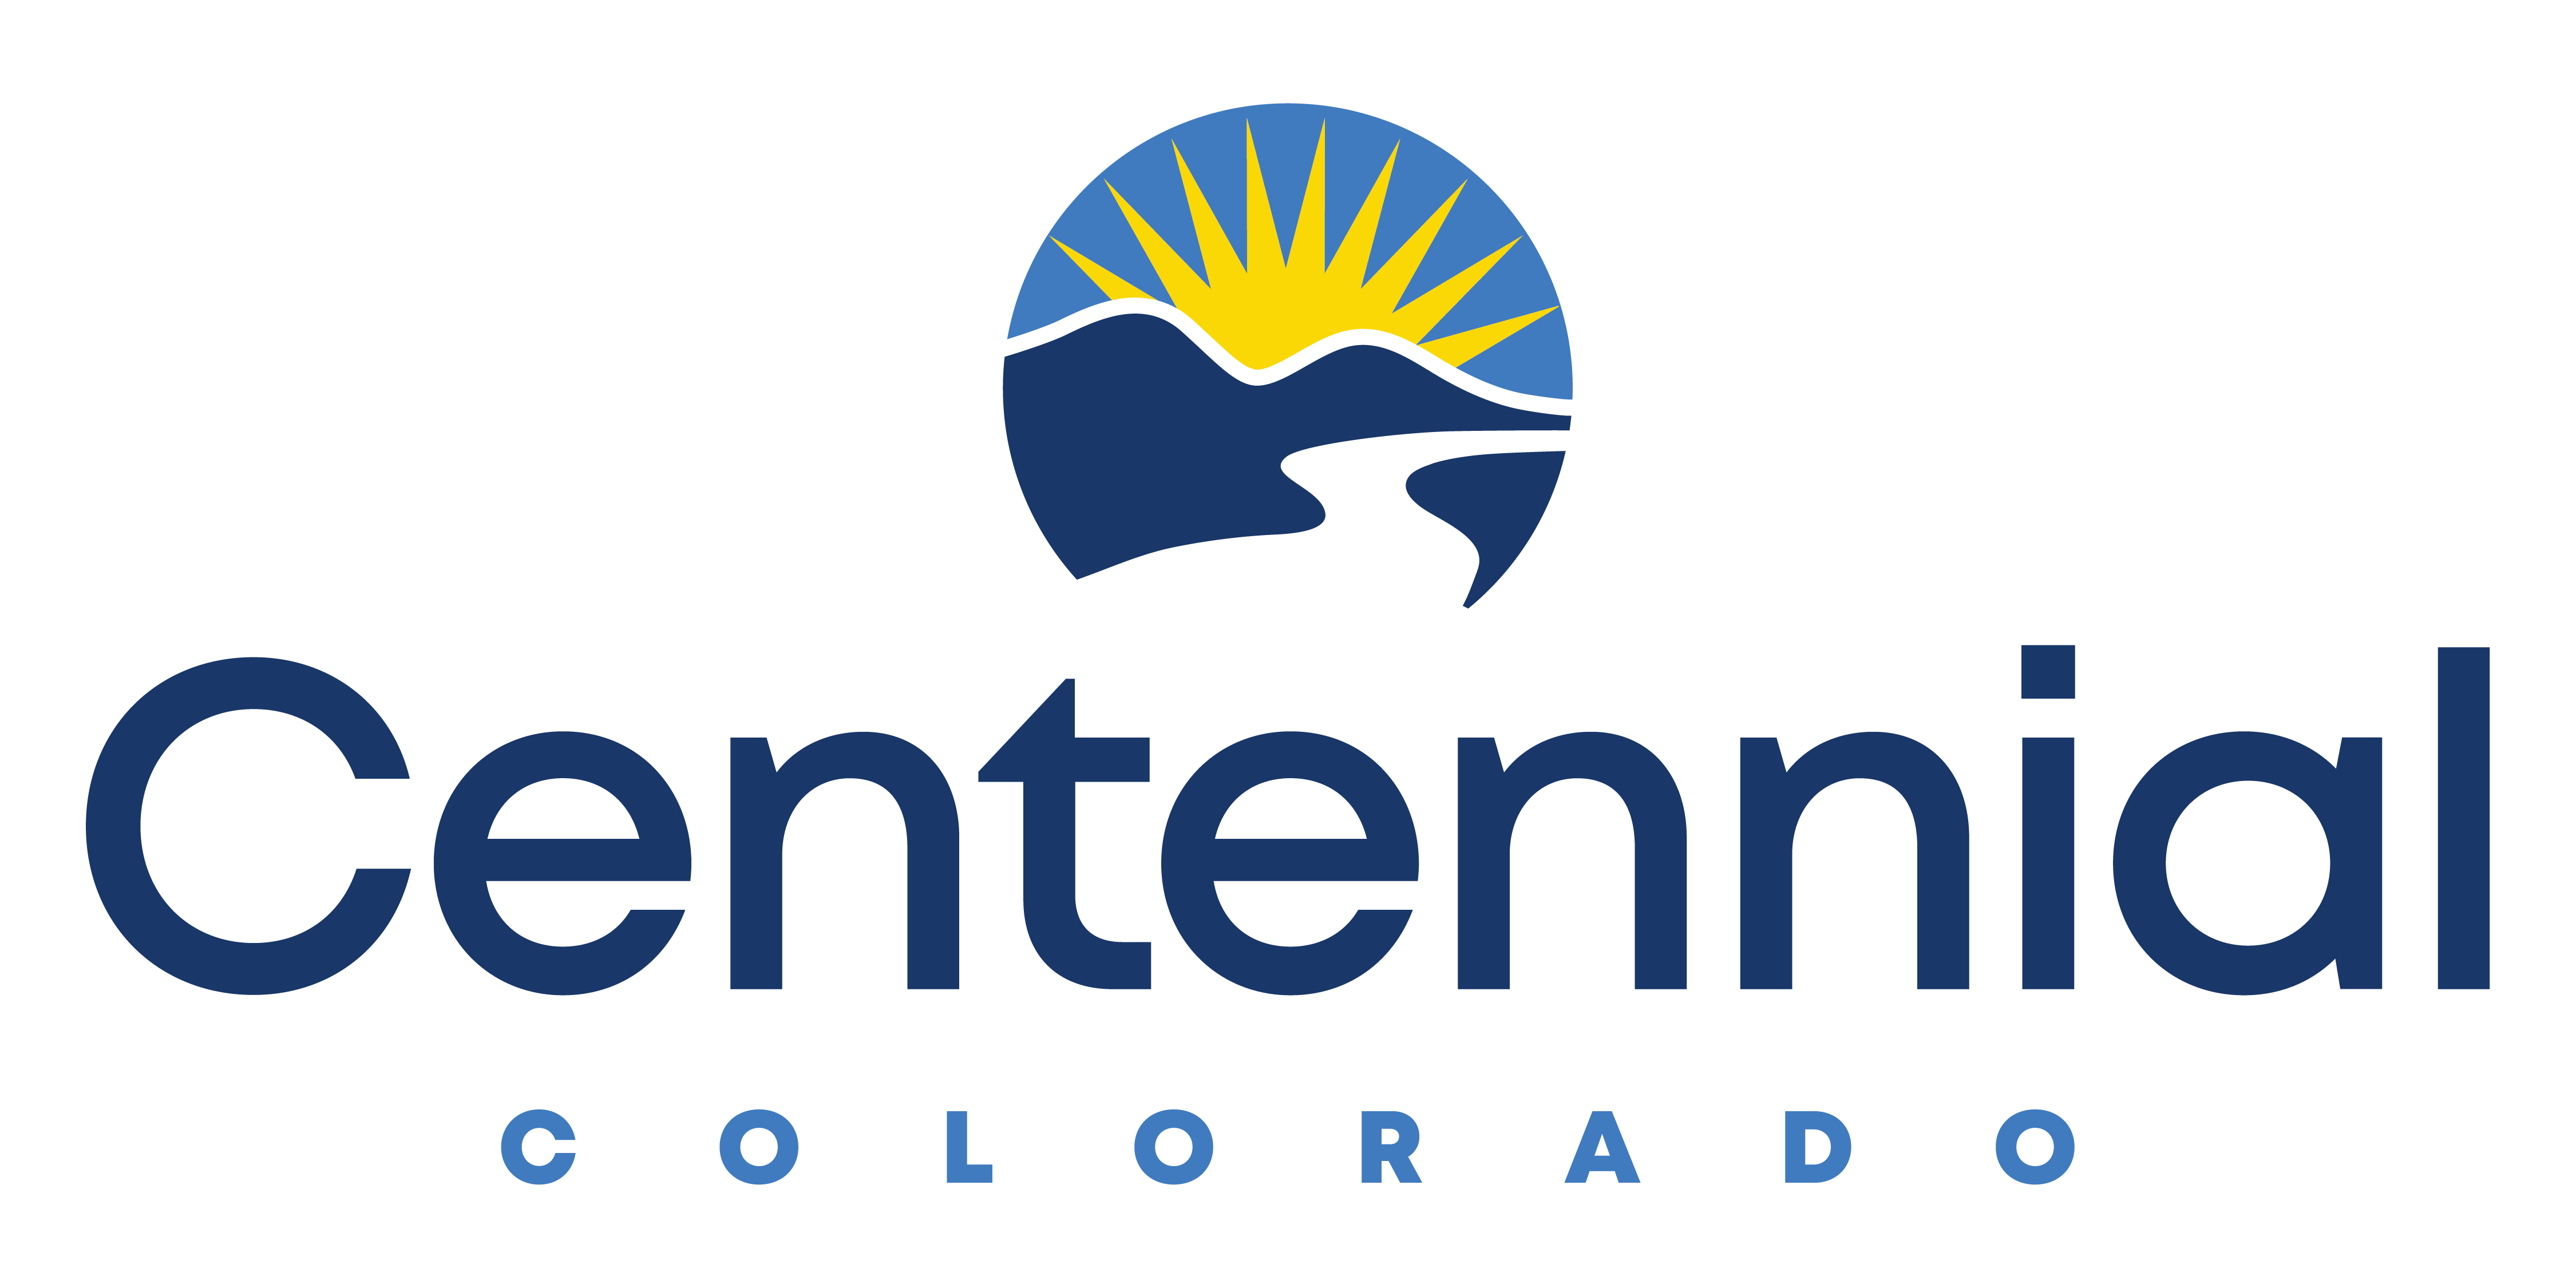 Centennial, Colorado